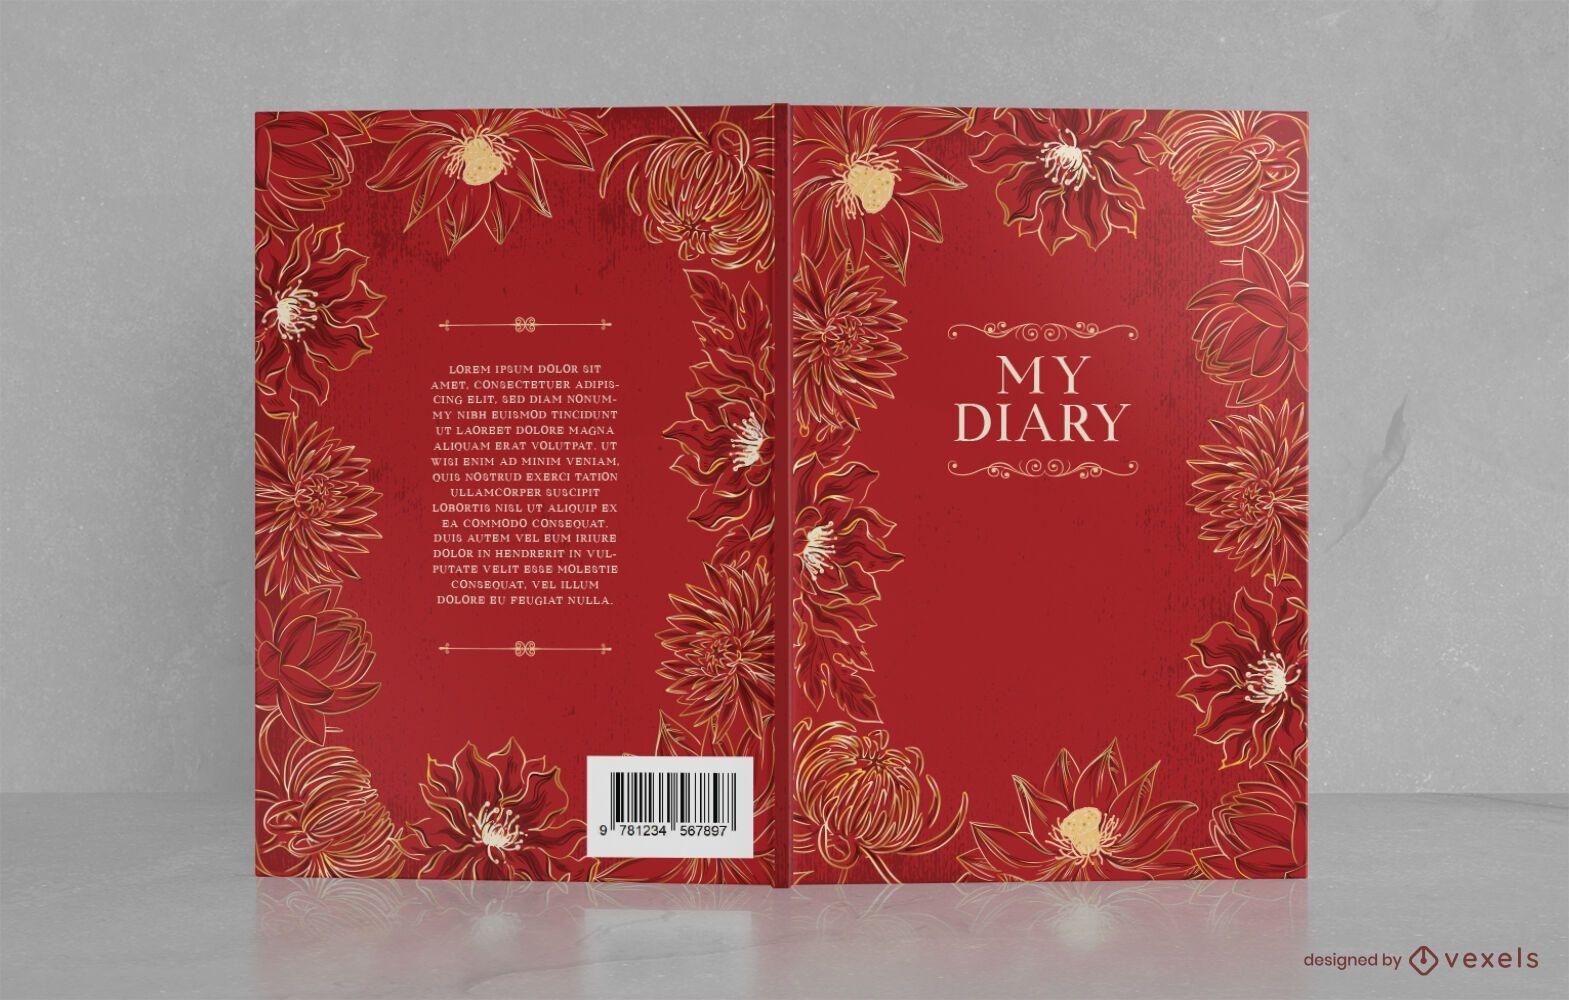 Design floral decorativo da capa do livro